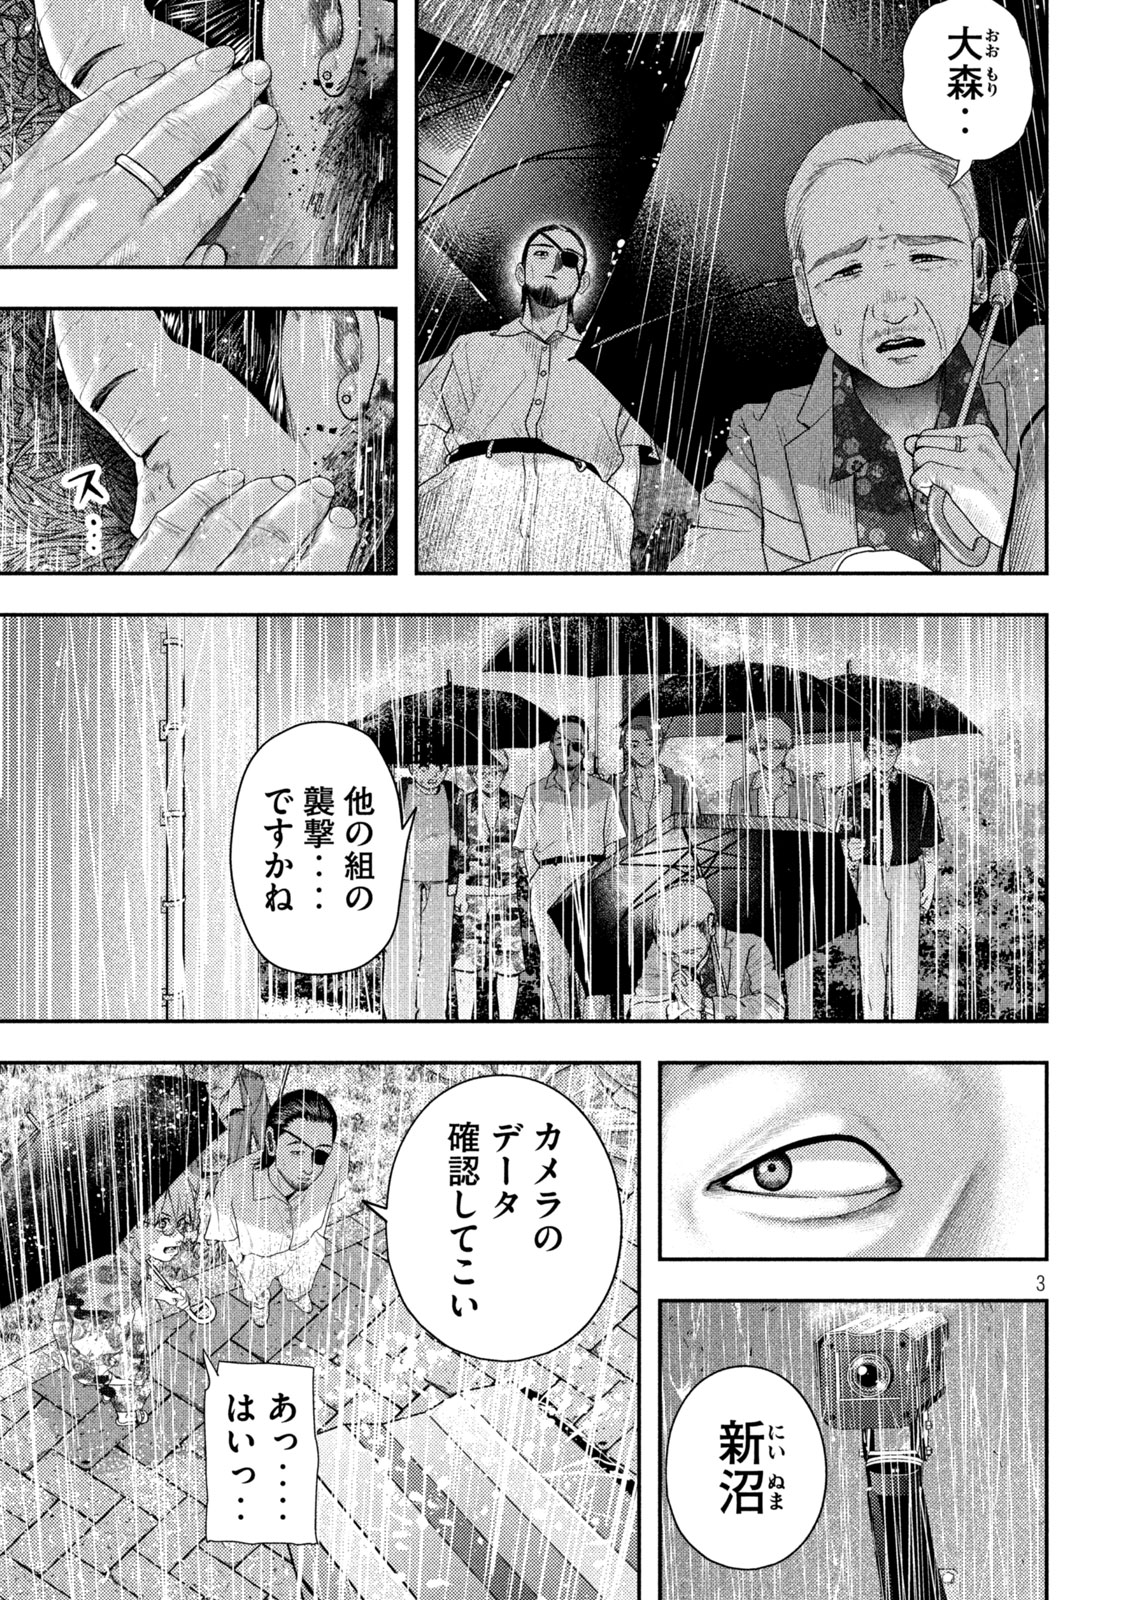 Nezumi no Koi - Chapter 18 - Page 3